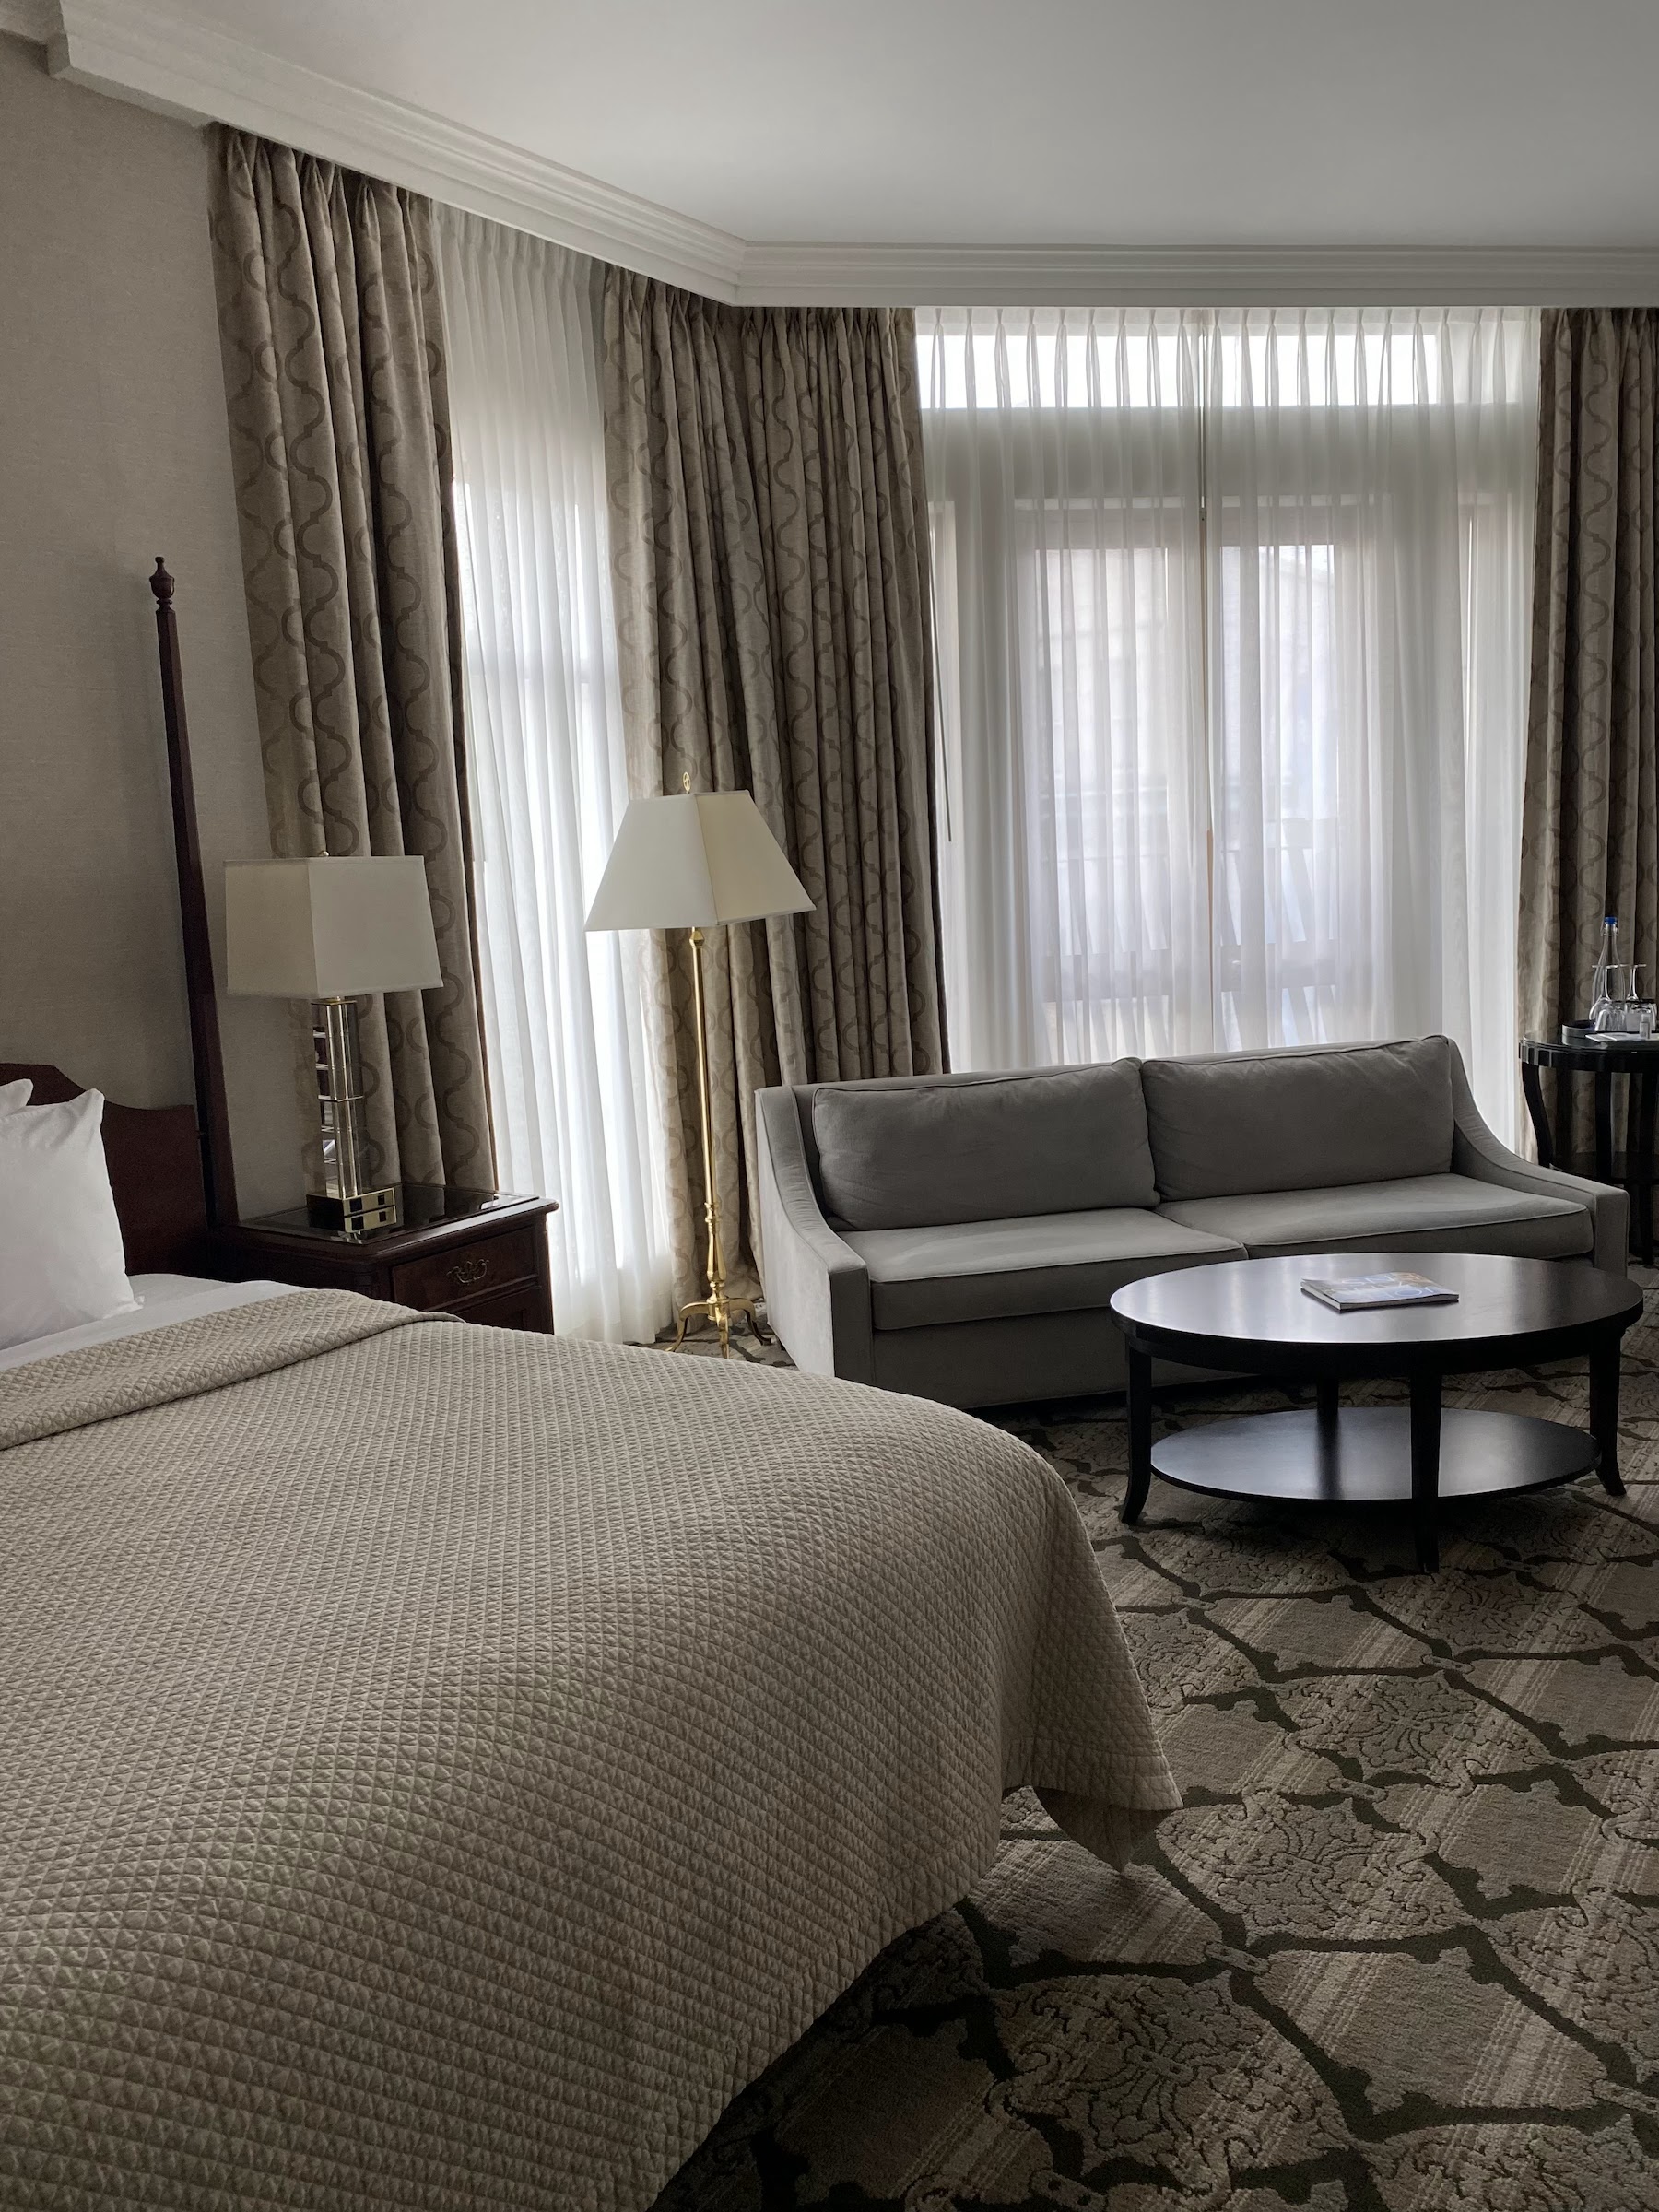 The ultimate Victoria overnight itinerary magnolia hotel